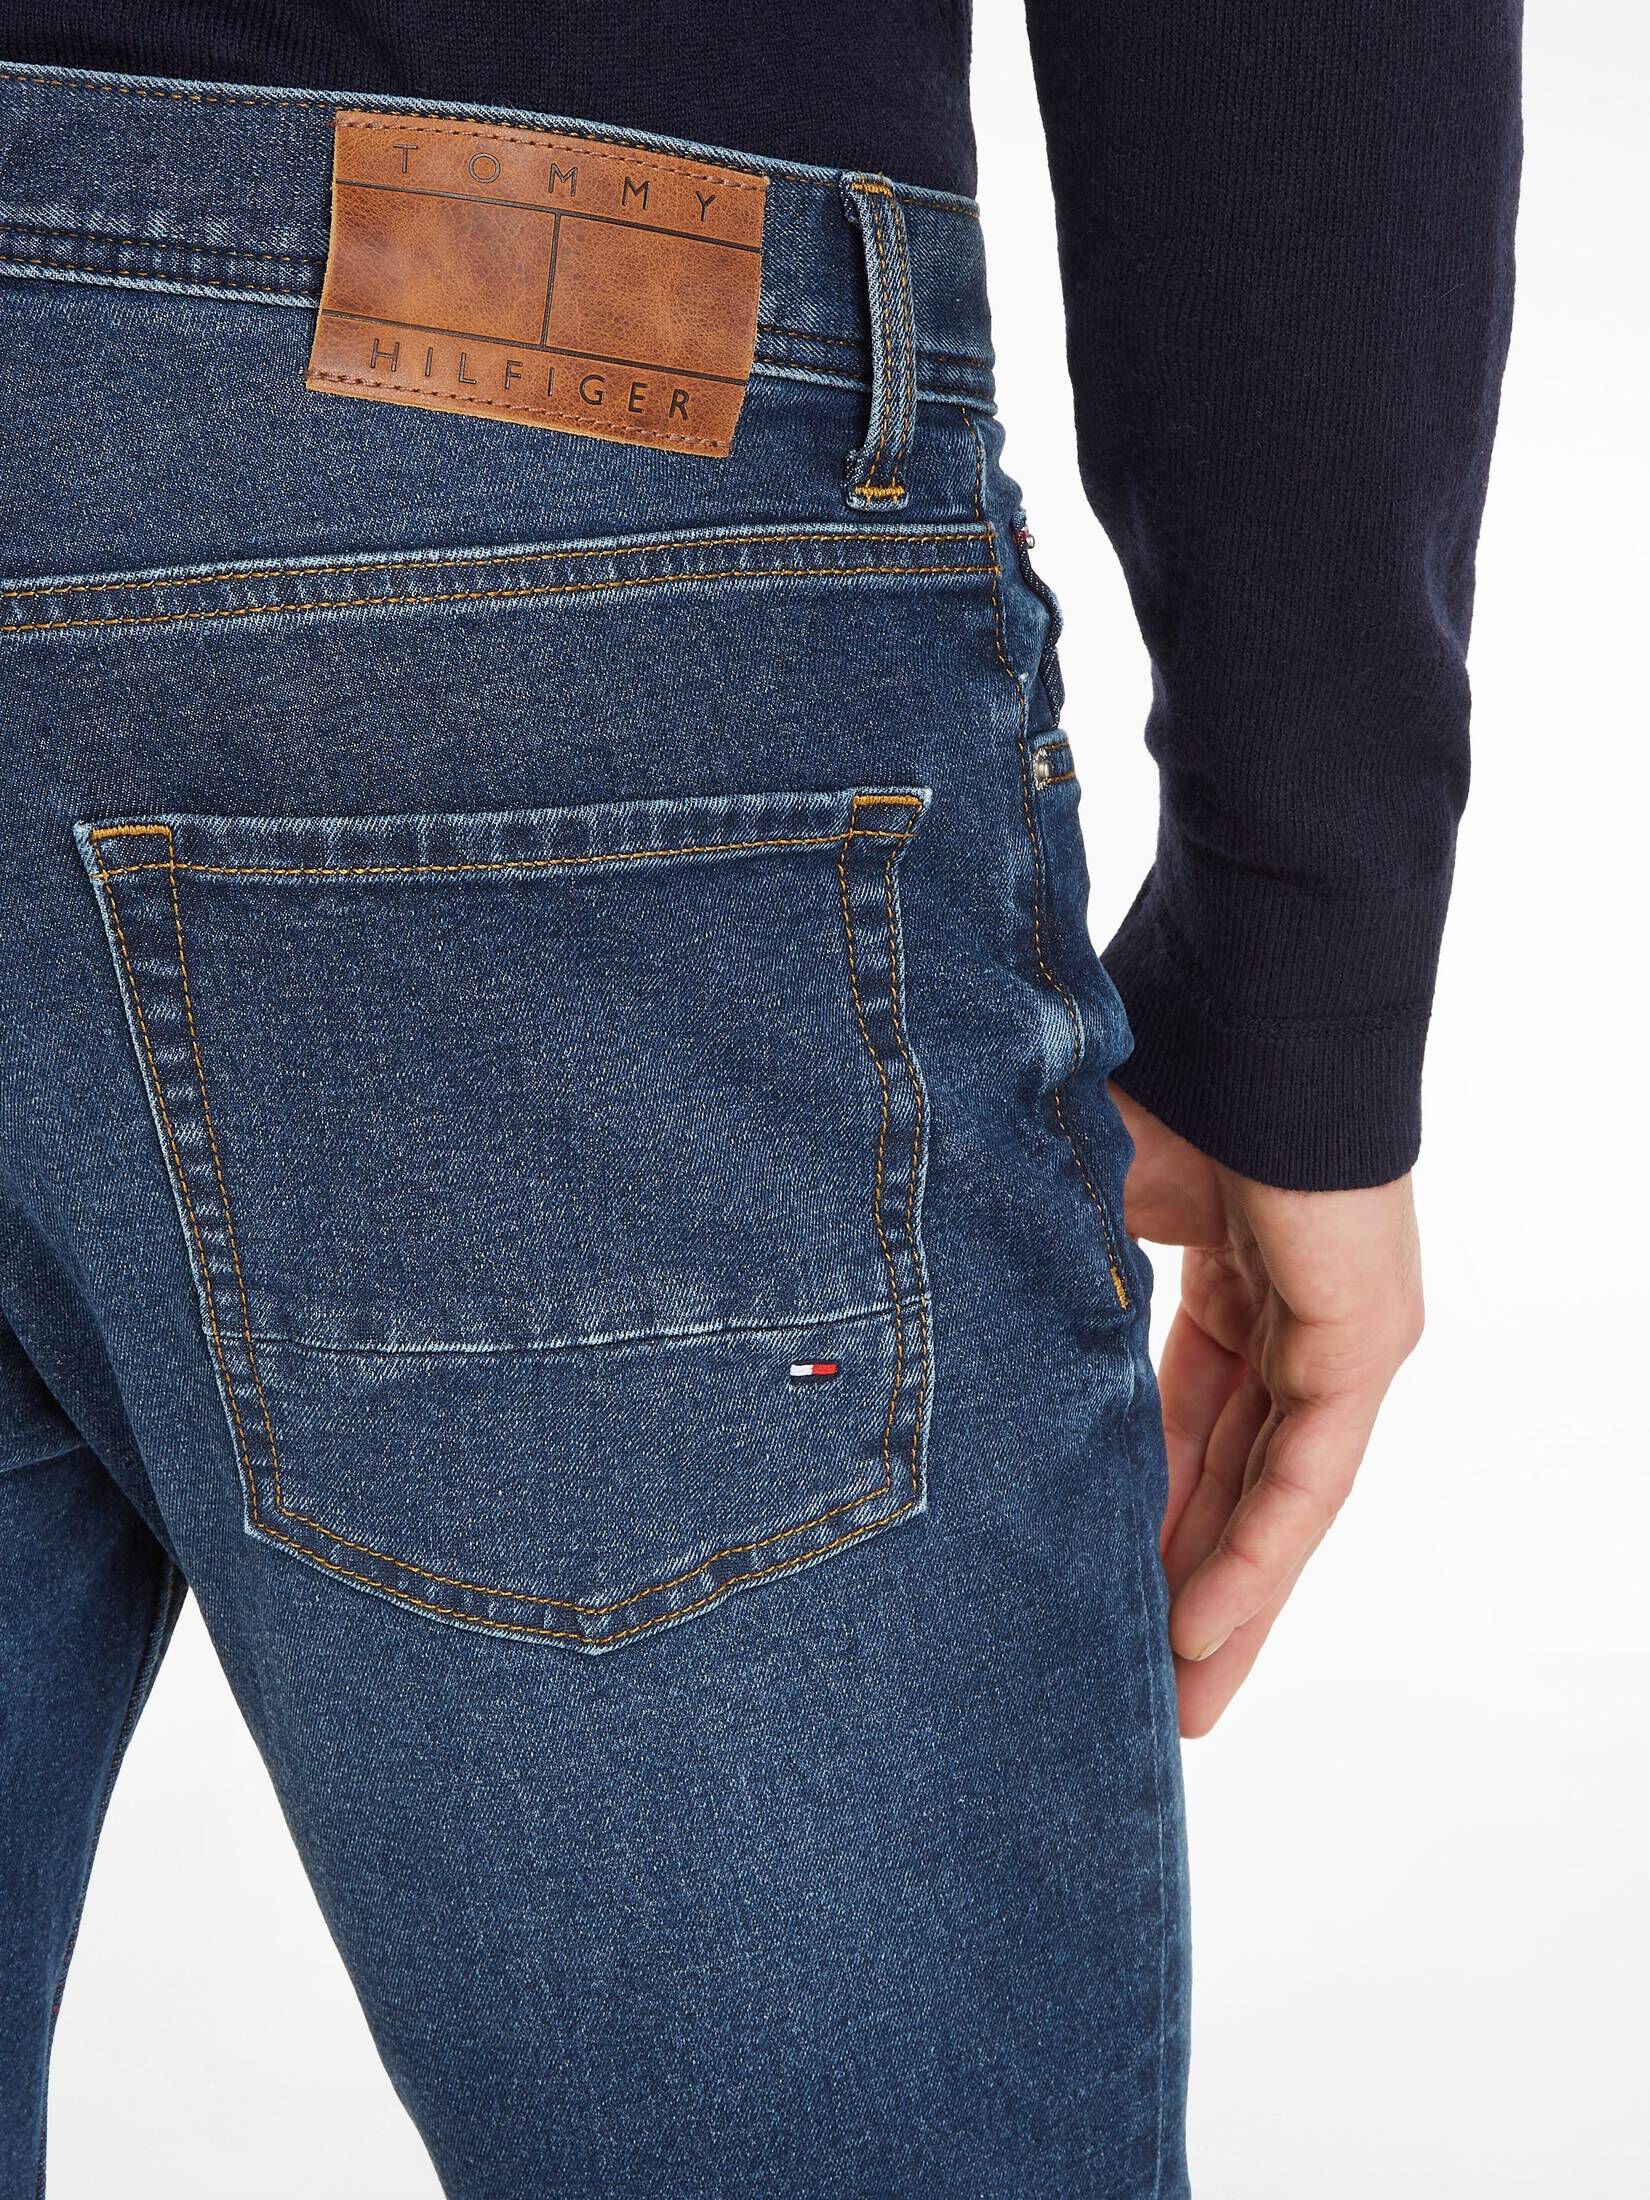 Jeans Hilfiger Tommy kaufen STERNE STR Herren Straight | TH engelhorn Fit DENTON